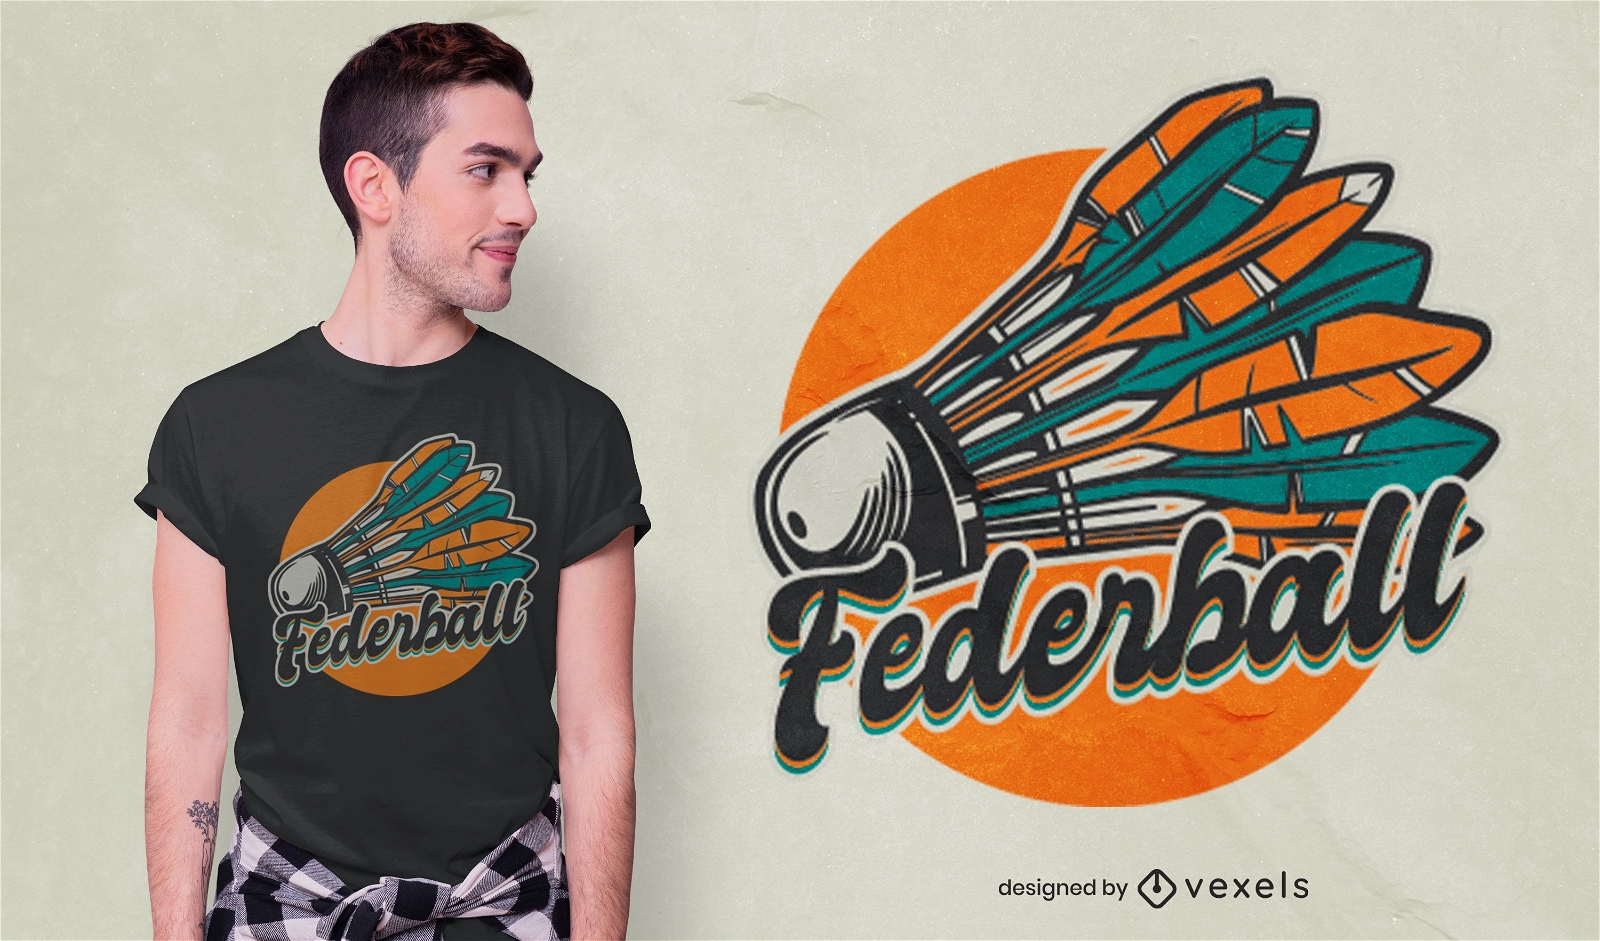 Federball Deutsches T-Shirt Design